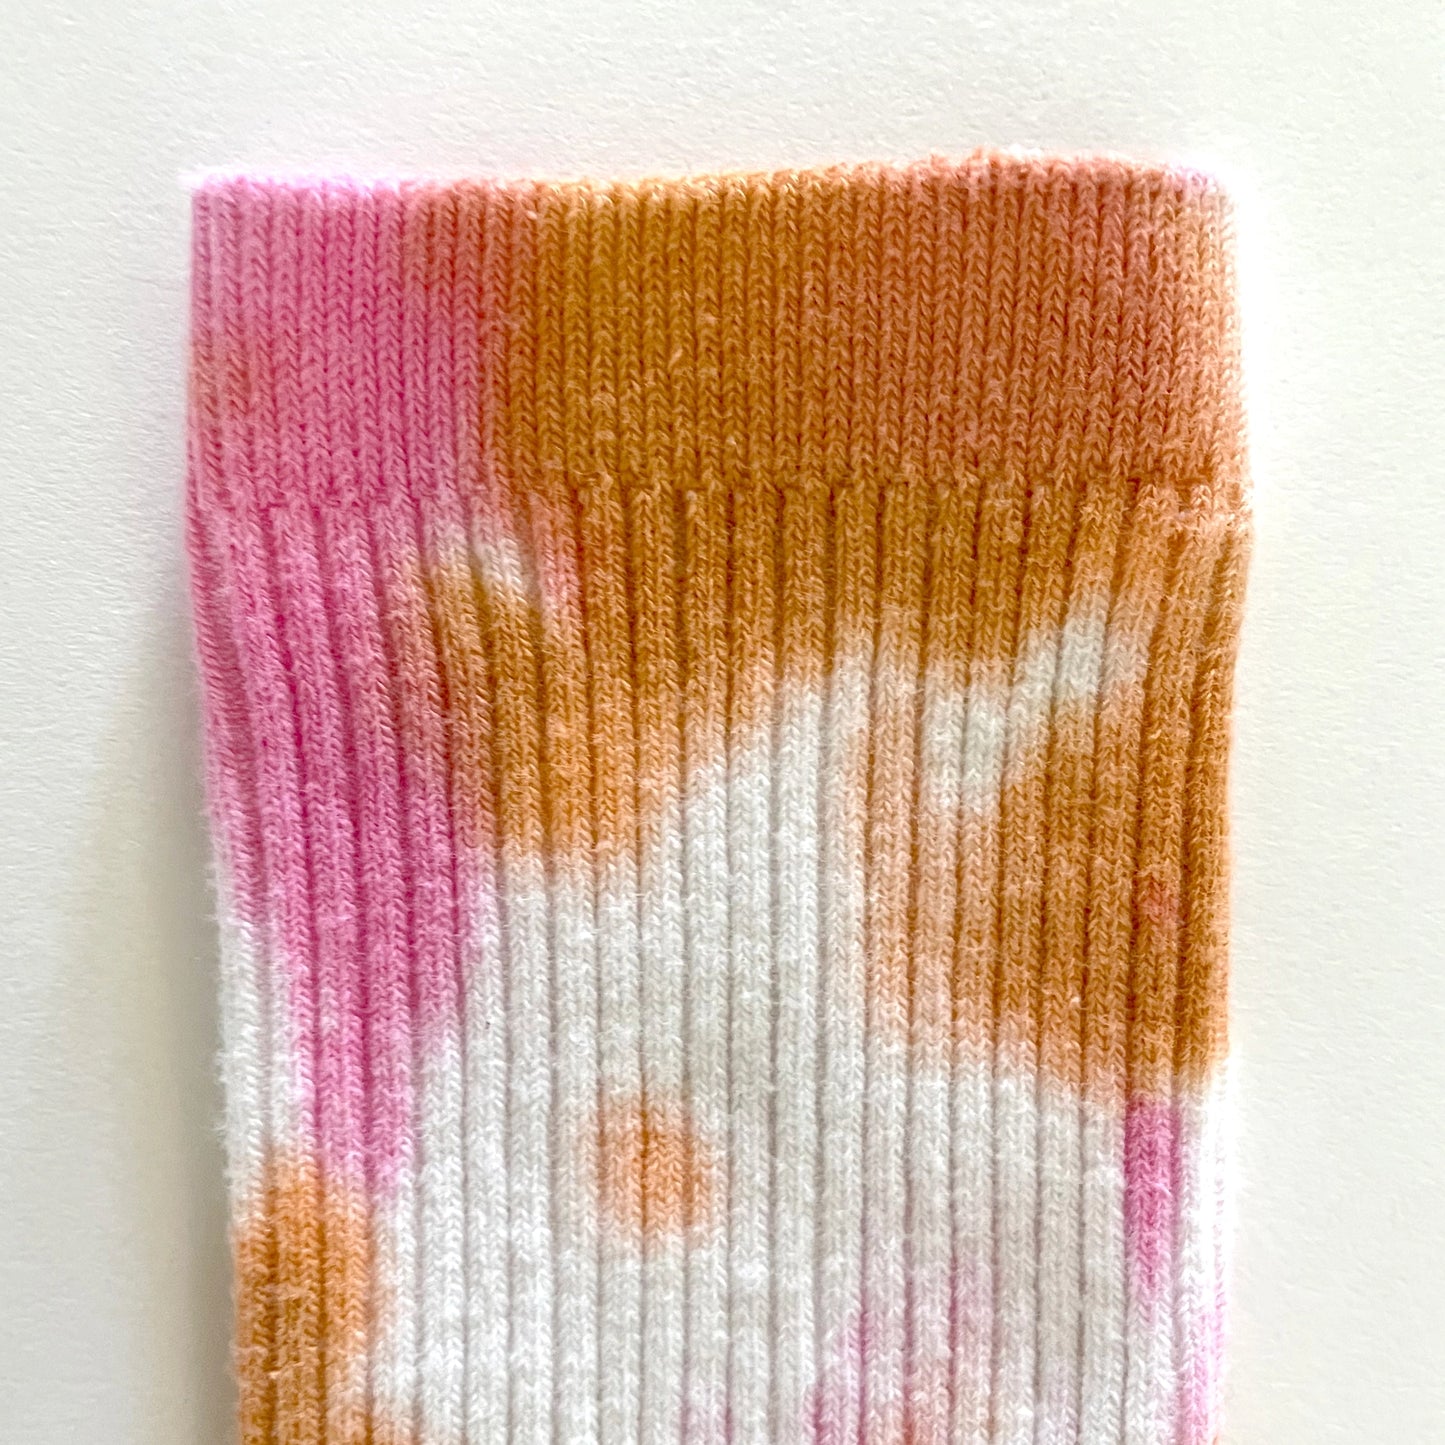 Merle Works - Dusty Tie-Dye Dressy Socks